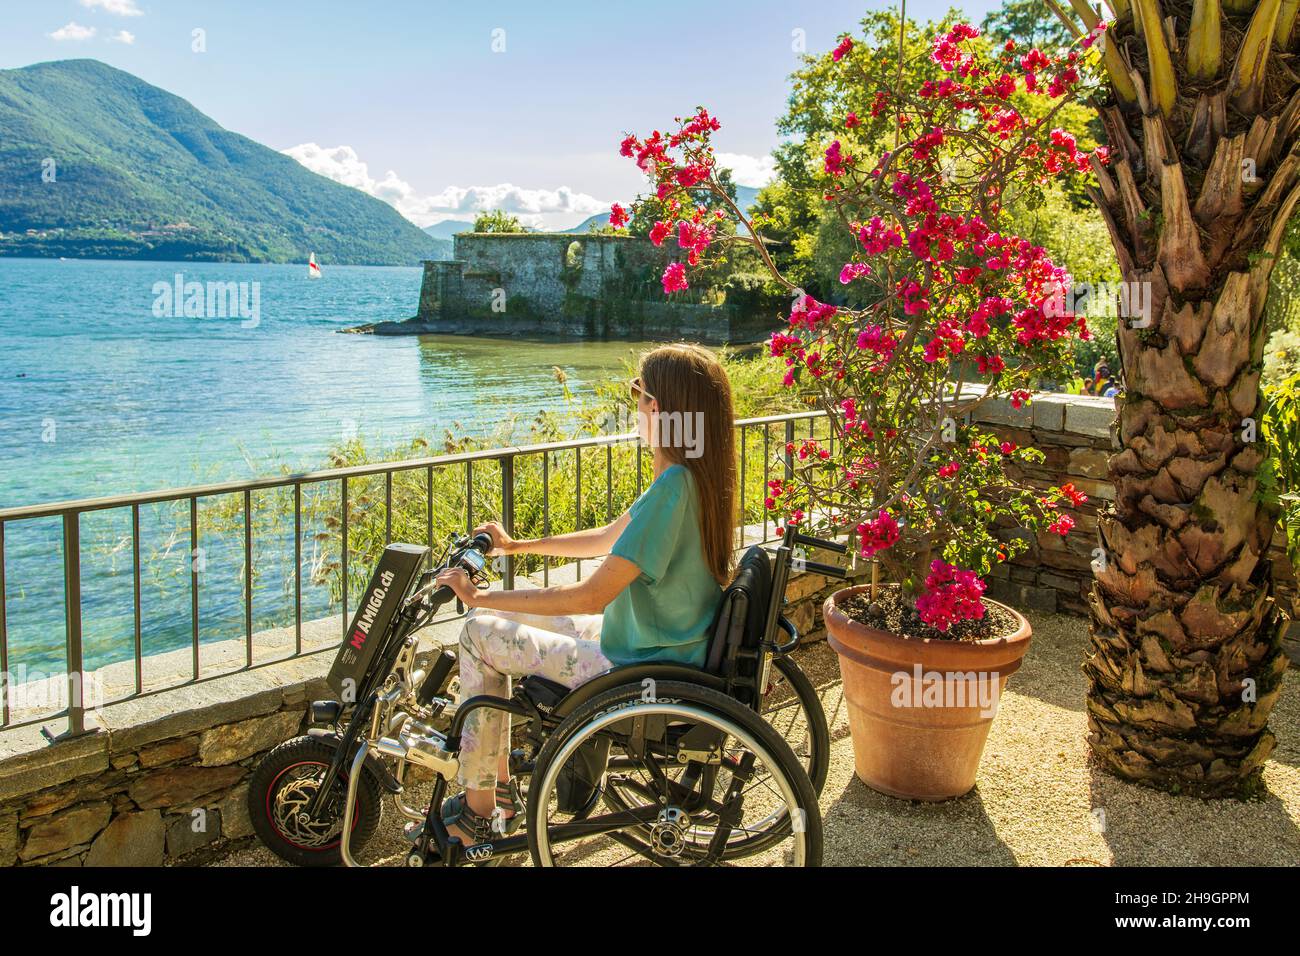 Young woman in wheelchair enjoying view on lakeside and mountains - Junge Rollstuhlfahrerin geniesst die Aussicht am Seeufer auf See und Berge Stock Photo